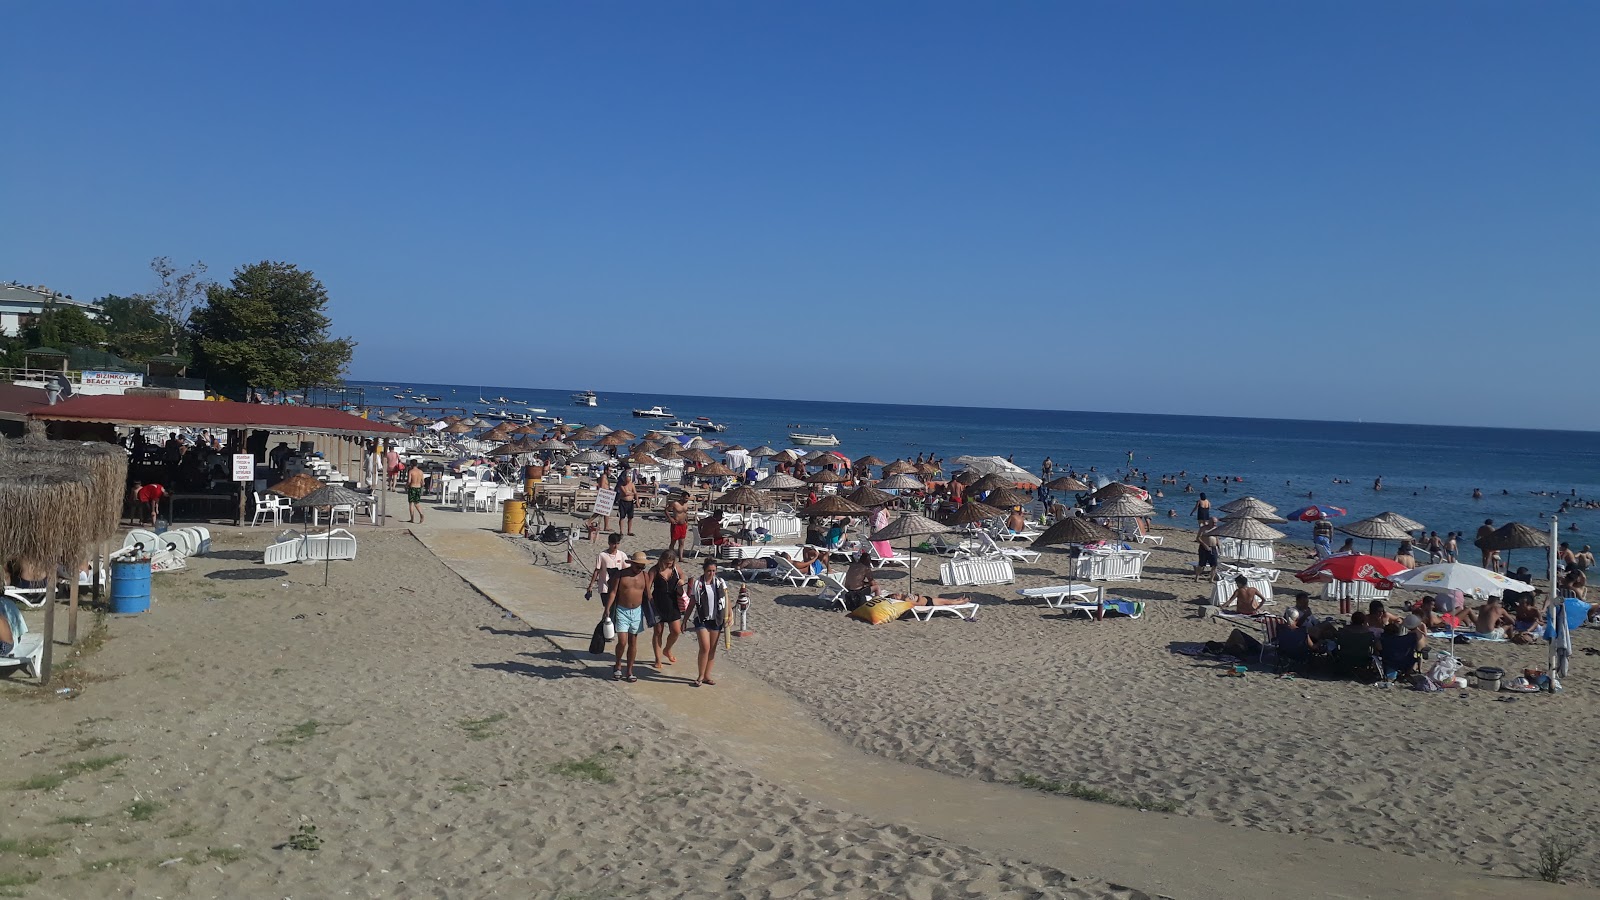 Photo of Bizimkoy beach beach resort area